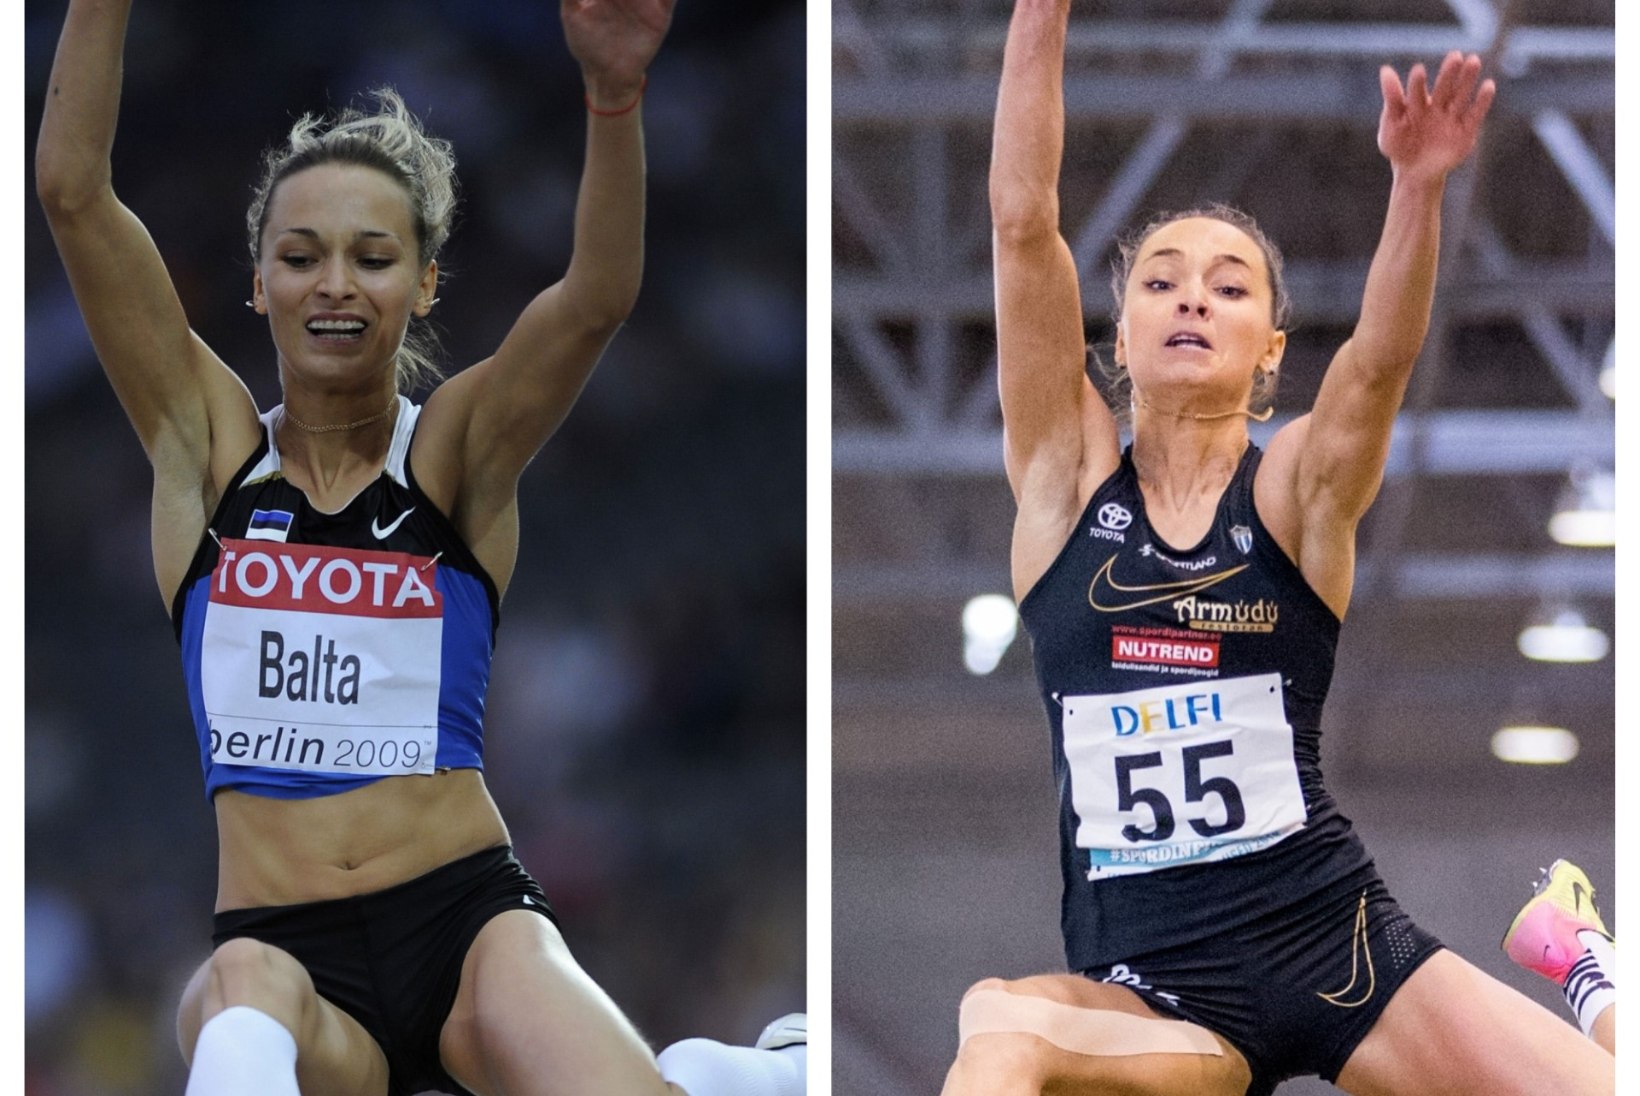 10 AASTA VÄLJAKUTSE | Vaata, kui palju on Eesti sportlased aja jooksul muutunud